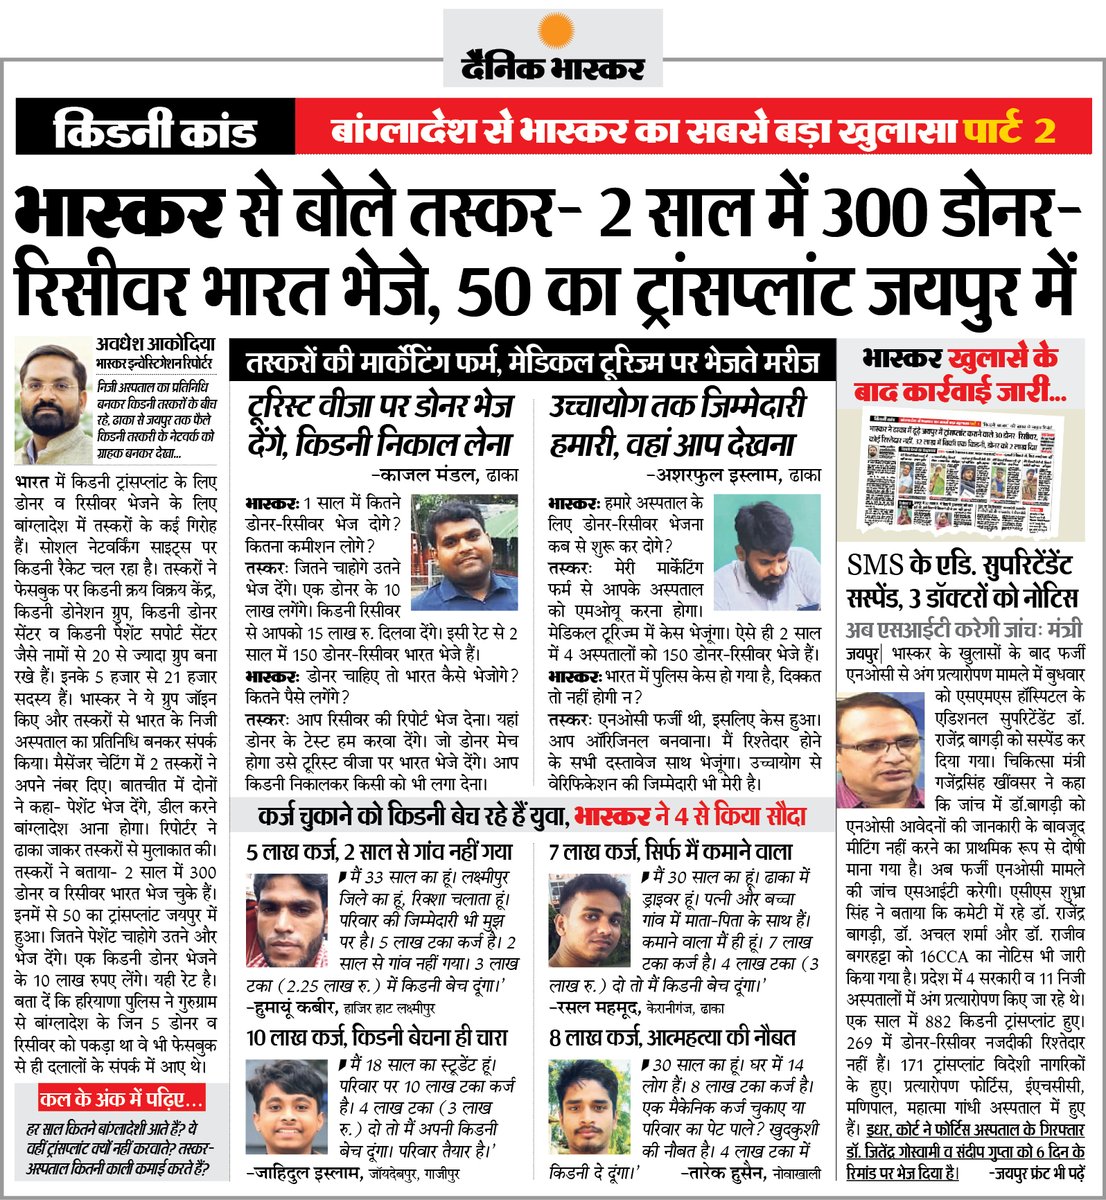 भास्कर का बड़ा खुलासा : तस्करों ने बताया - 2 साल में 300 डोनर-रिसीवर भारत भेजे, 50 का ट्रांसप्लांट जयपुर में हुए
#KidneyTransplant #Rajasthan #Bangladesh
अधिक खबरें और ई-पेपर पढ़ने के लिए दैनिक भास्कर ऐप इंस्टॉल करें - dainik-b.in/mjwzCSxDdsb